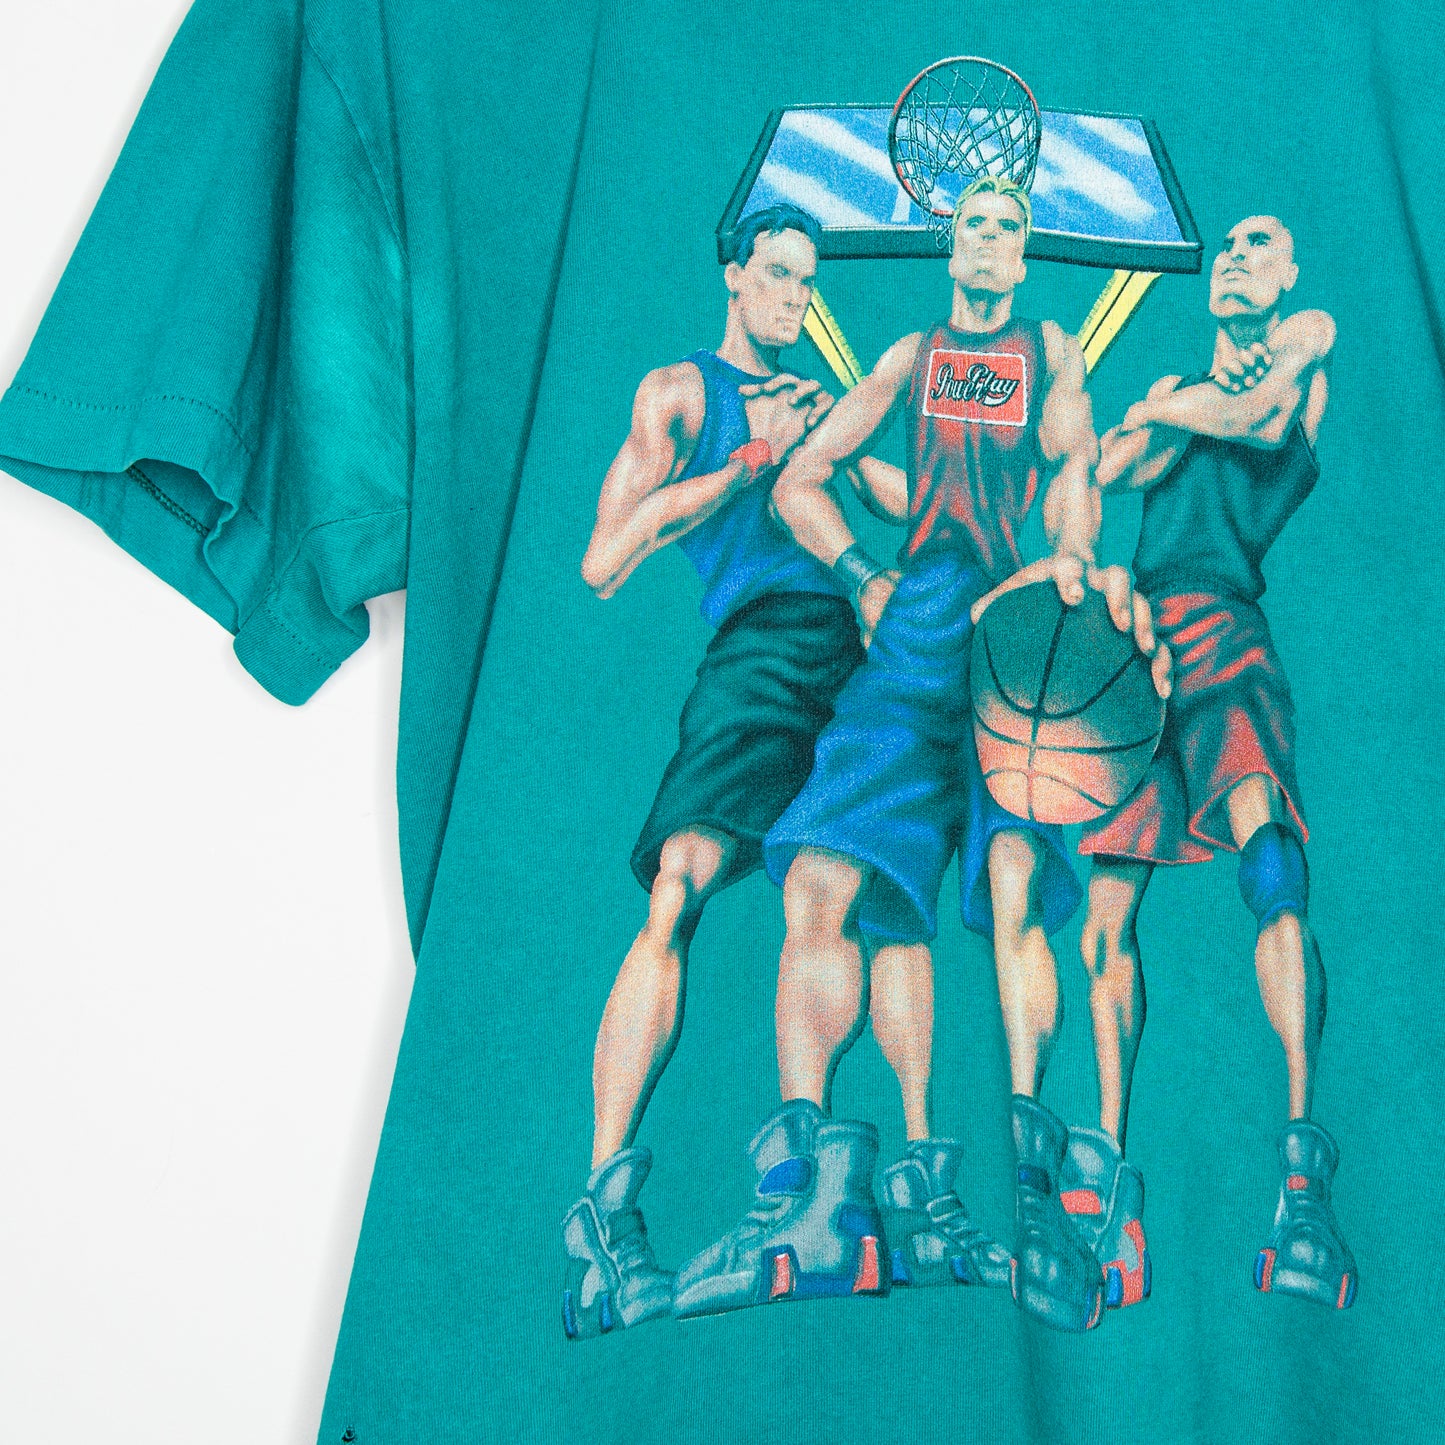 90's Power Play Street Ball T-Shirt XL